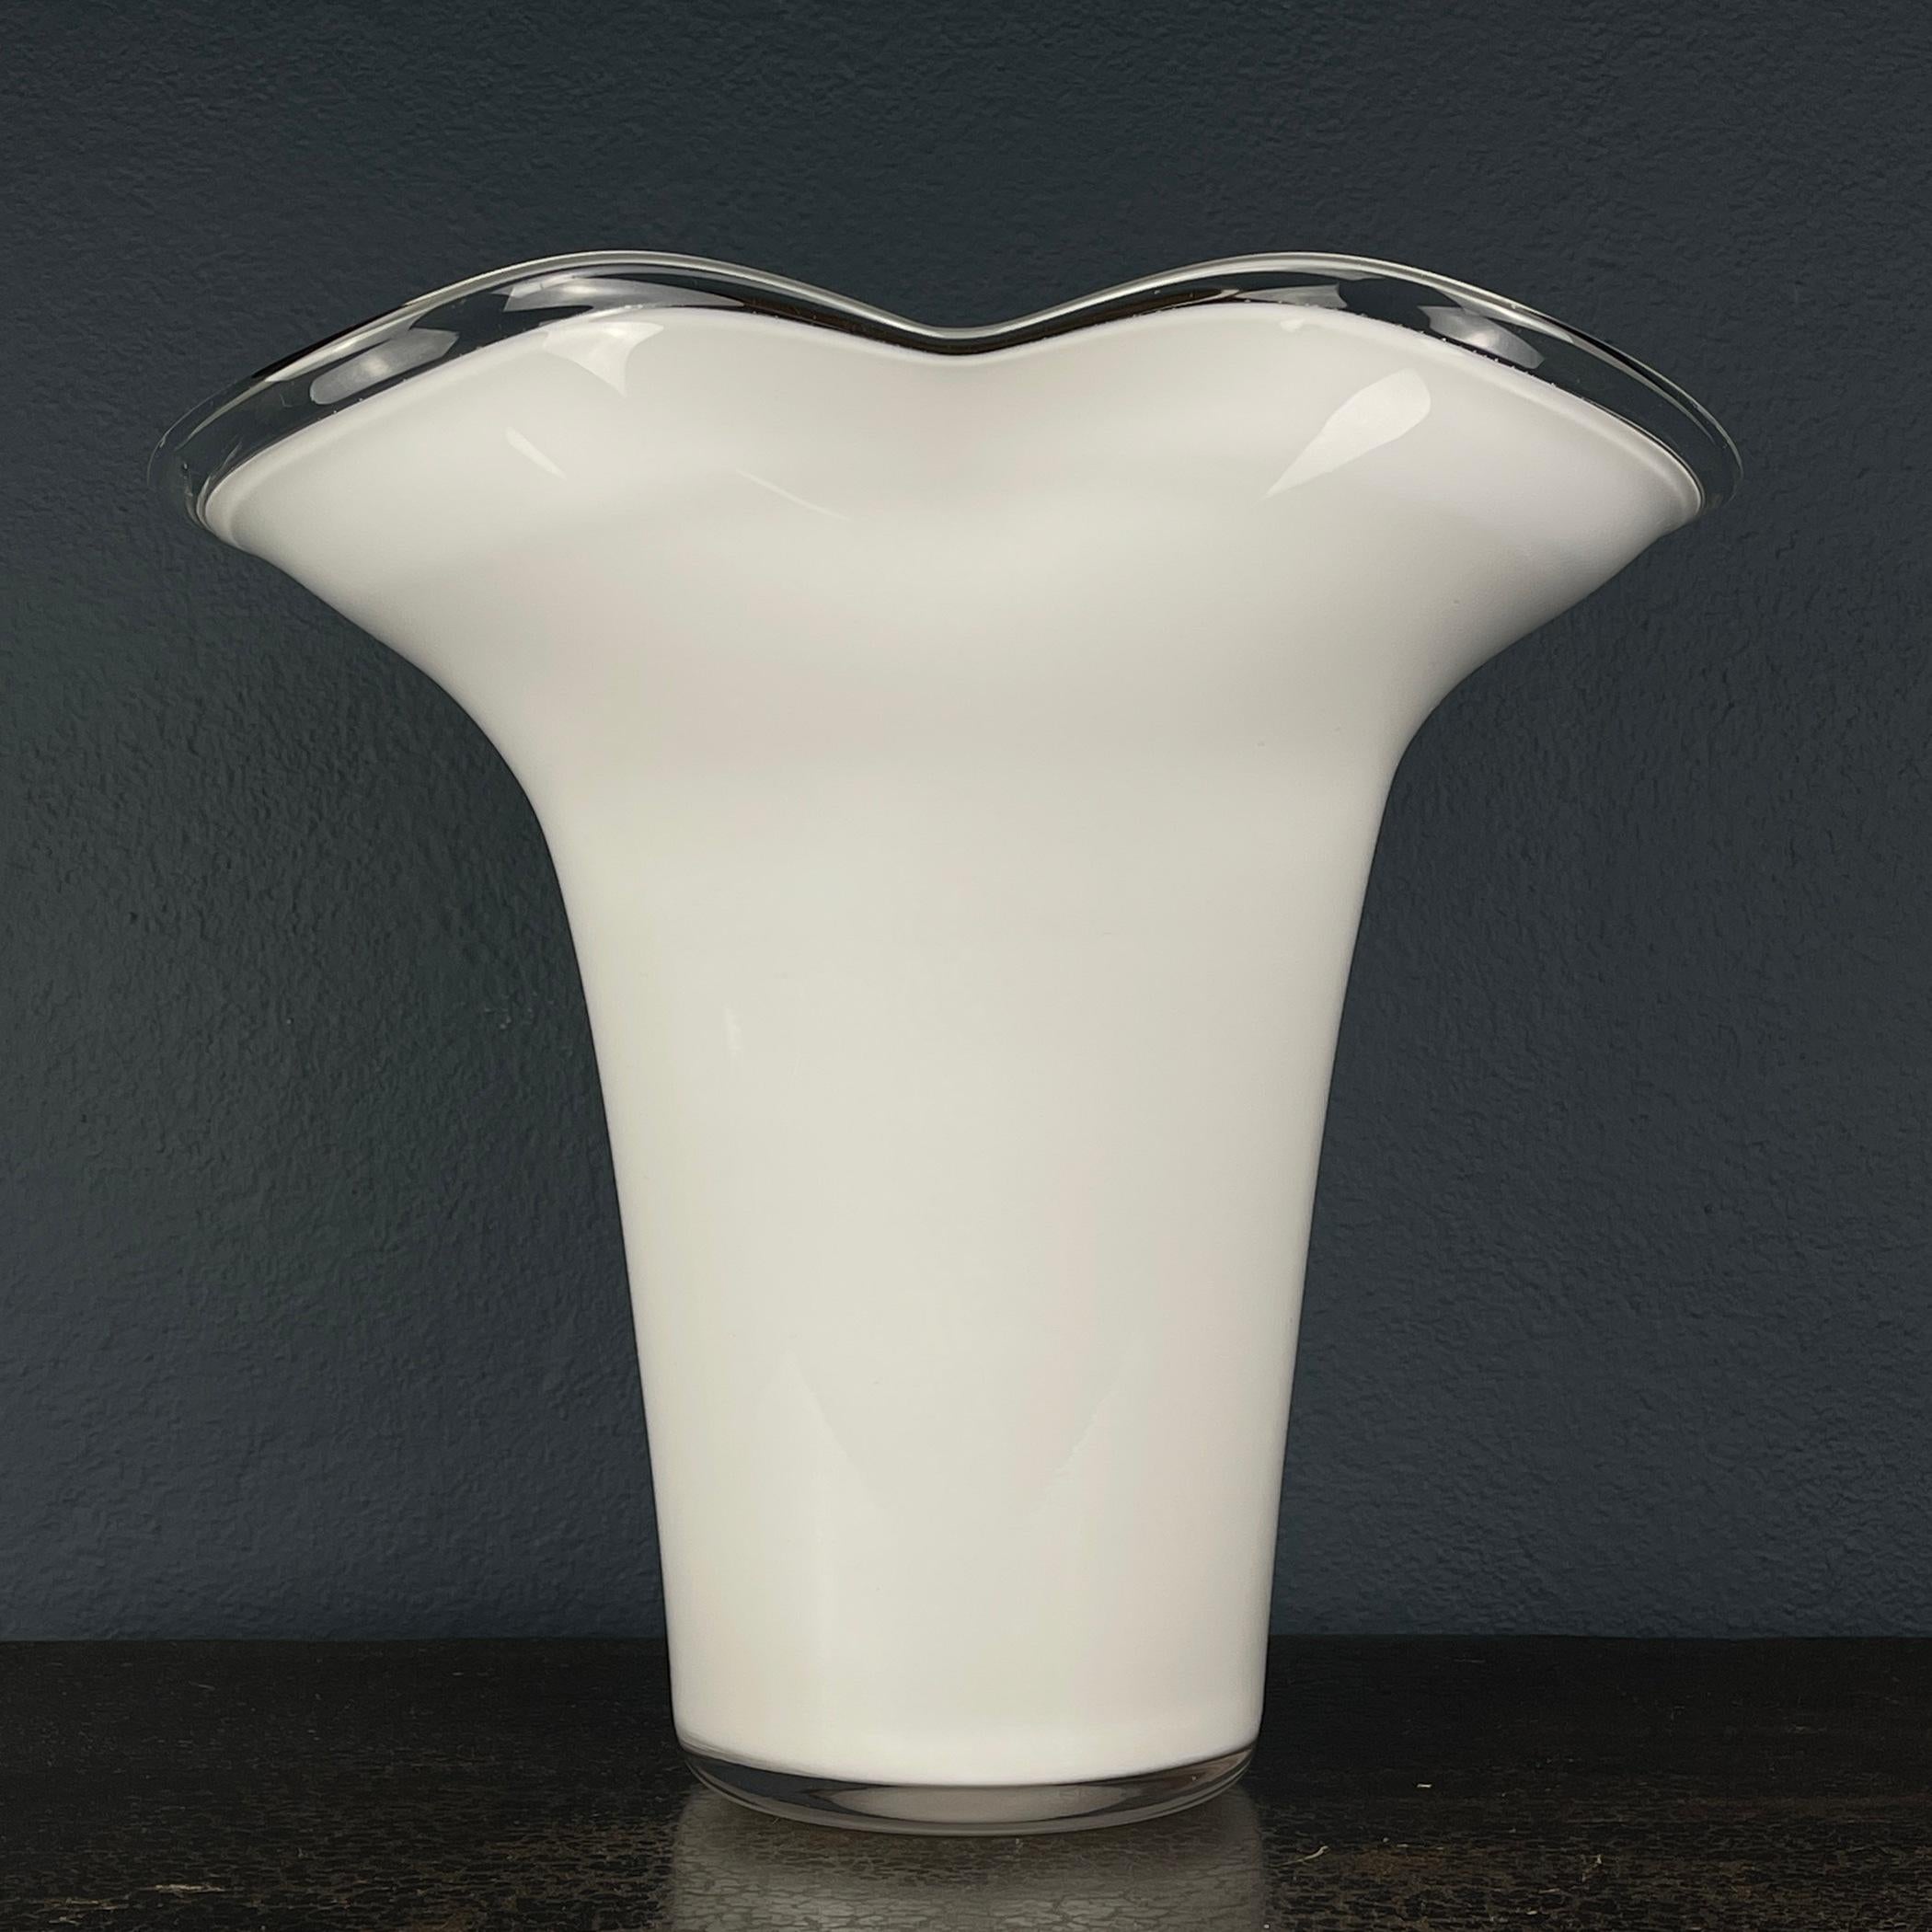 Whiting, ce superbe vase blanc en verre d'art de Murano est un chef-d'œuvre méticuleusement fabriqué en Italie dans les années 1970. Ce vase a gracieusement résisté à l'épreuve du temps et reste dans un état vintage remarquable.

Avec son design du